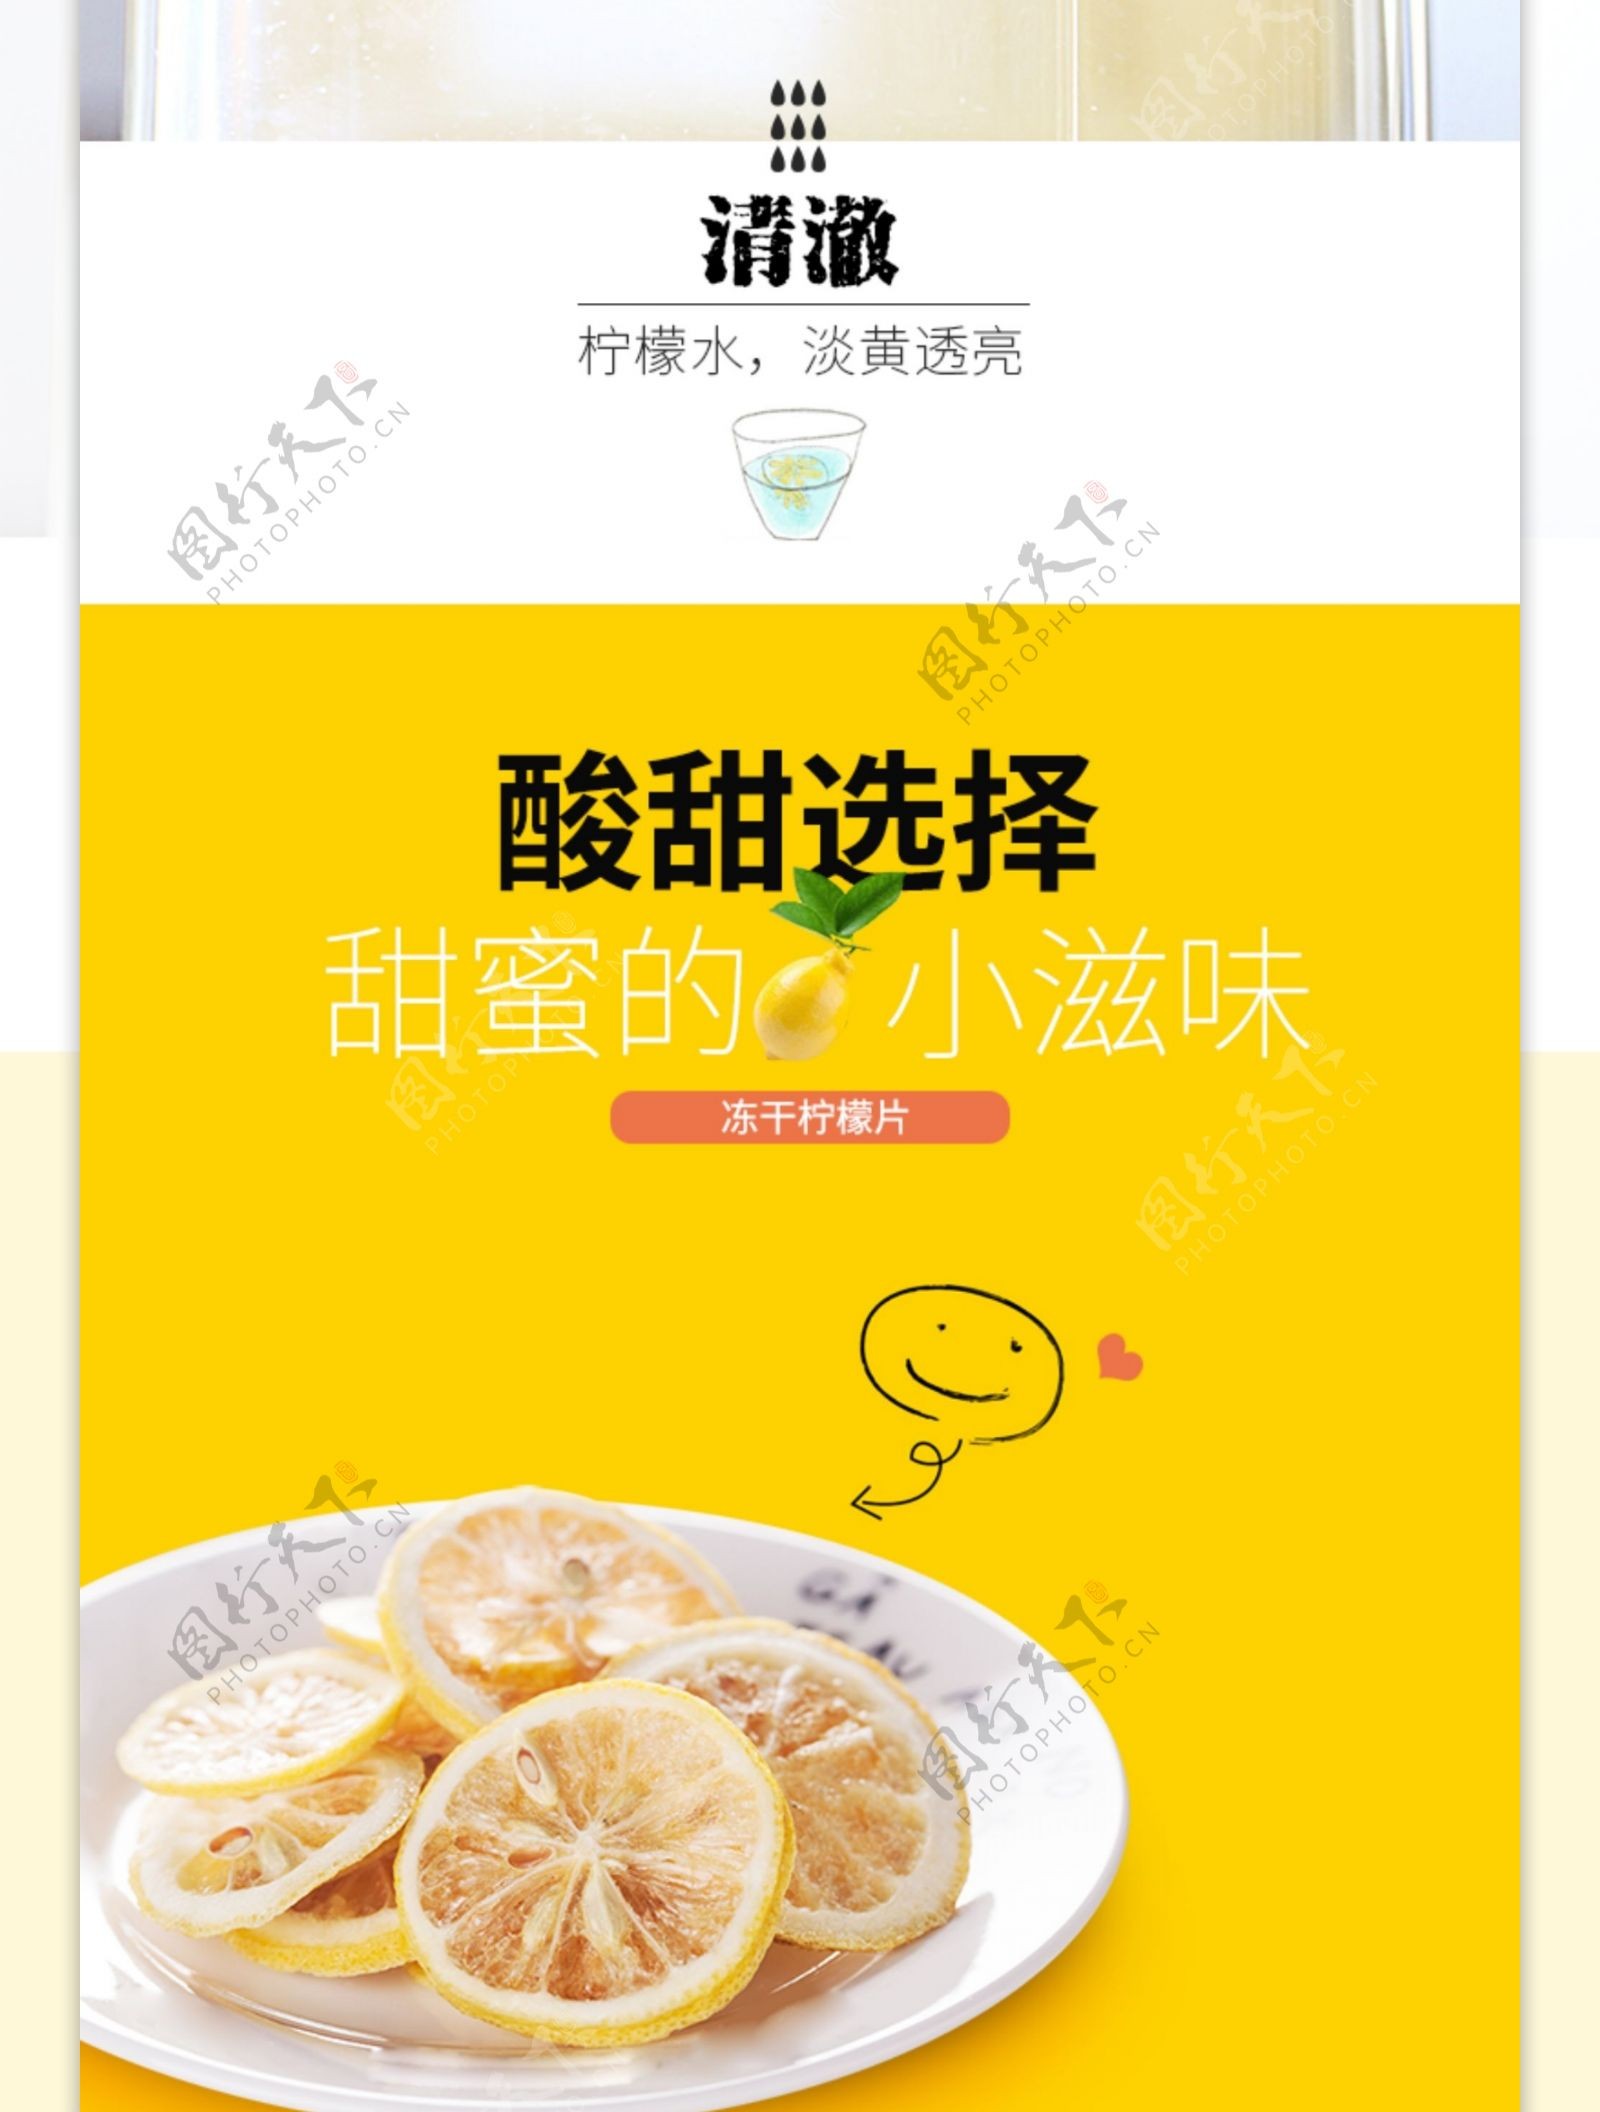 柠檬片促销淘宝详情页